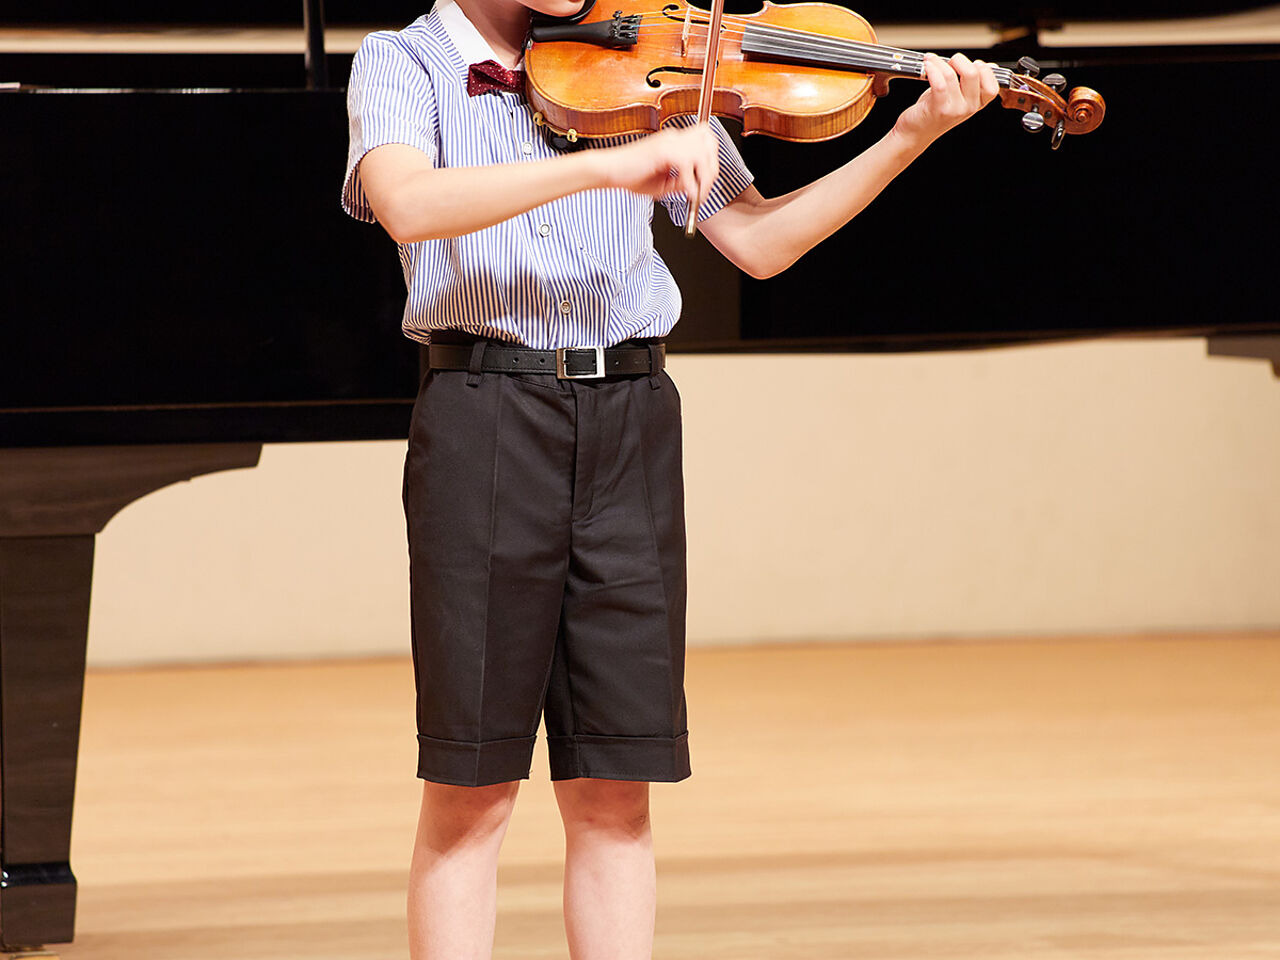 発表会でバイオリンを弾いている男の子の画像